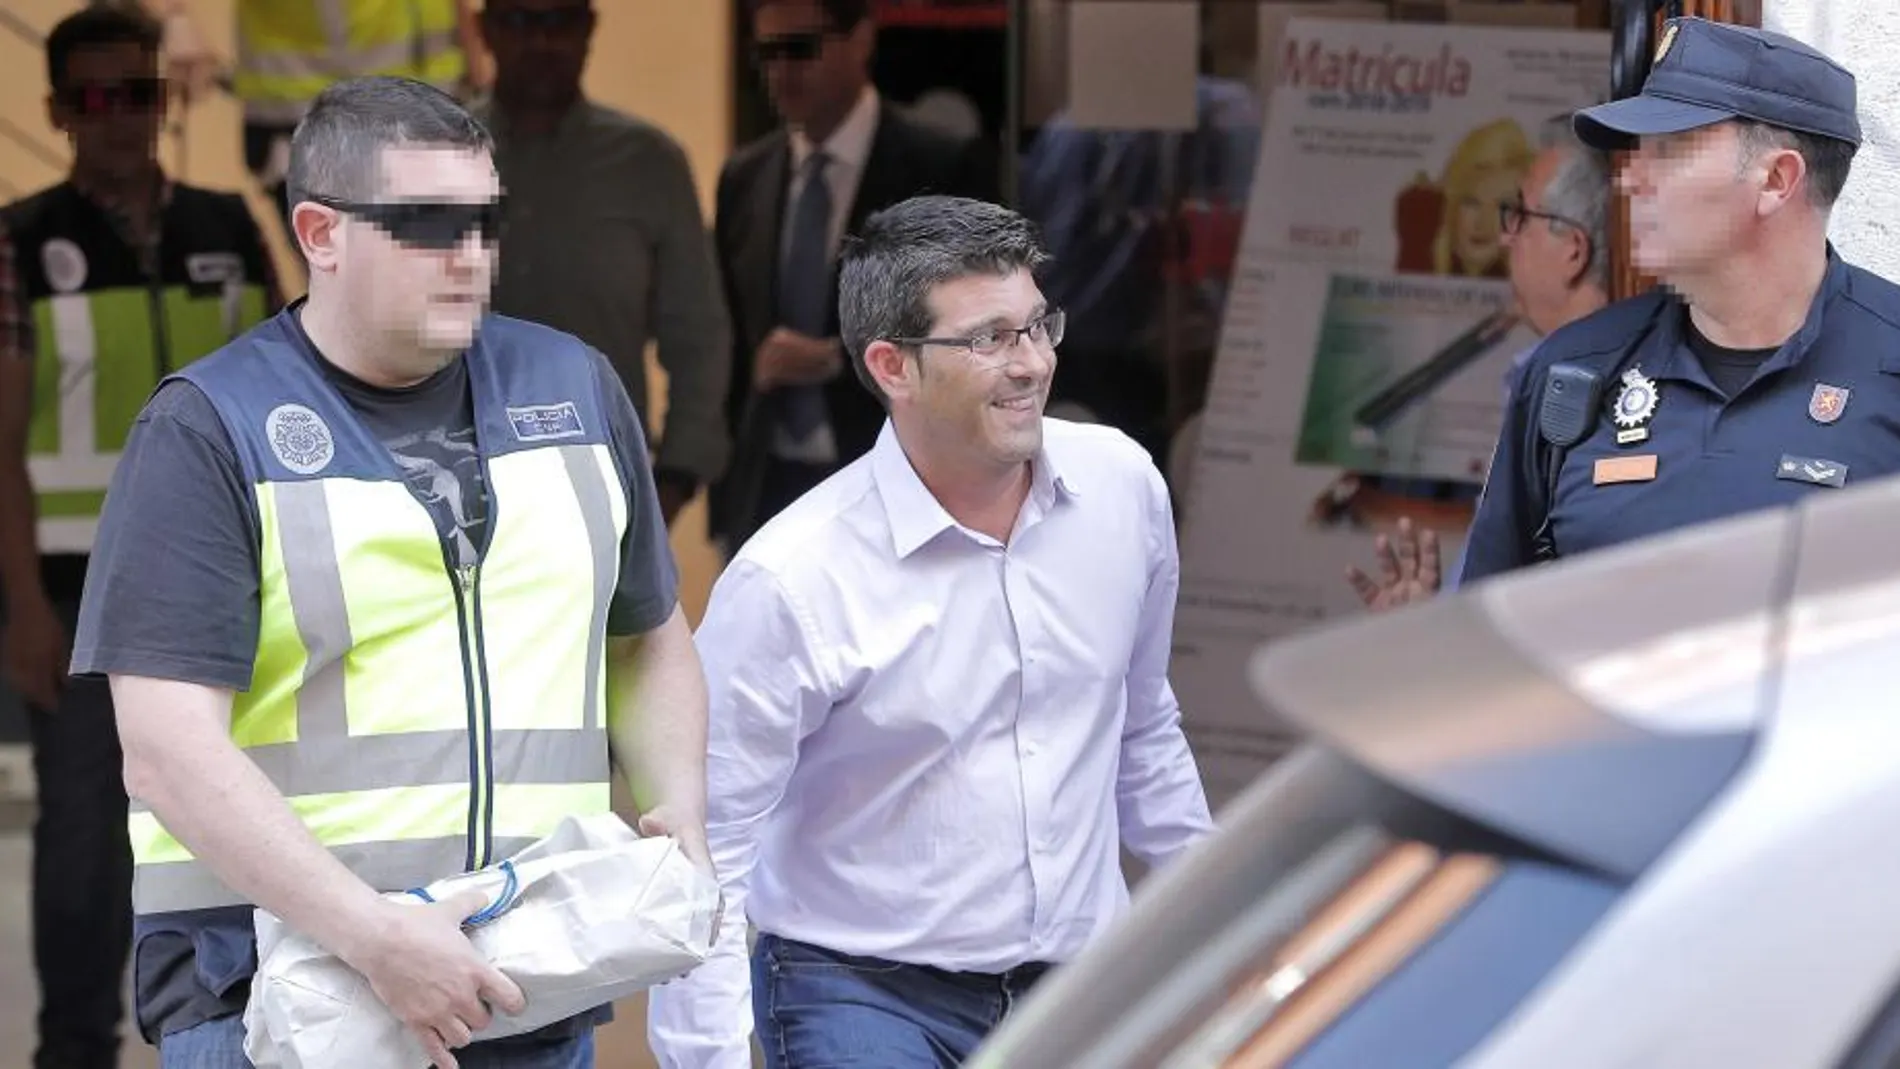 El ex presidente de la Diputación de Valencia, Jorge Rodríguez, fue detenido por su implicación en la operación Alquería, que investiga 12 contratos de alta dirección de Divalterra por valor de dos millones de euros. Imagen de archivo.